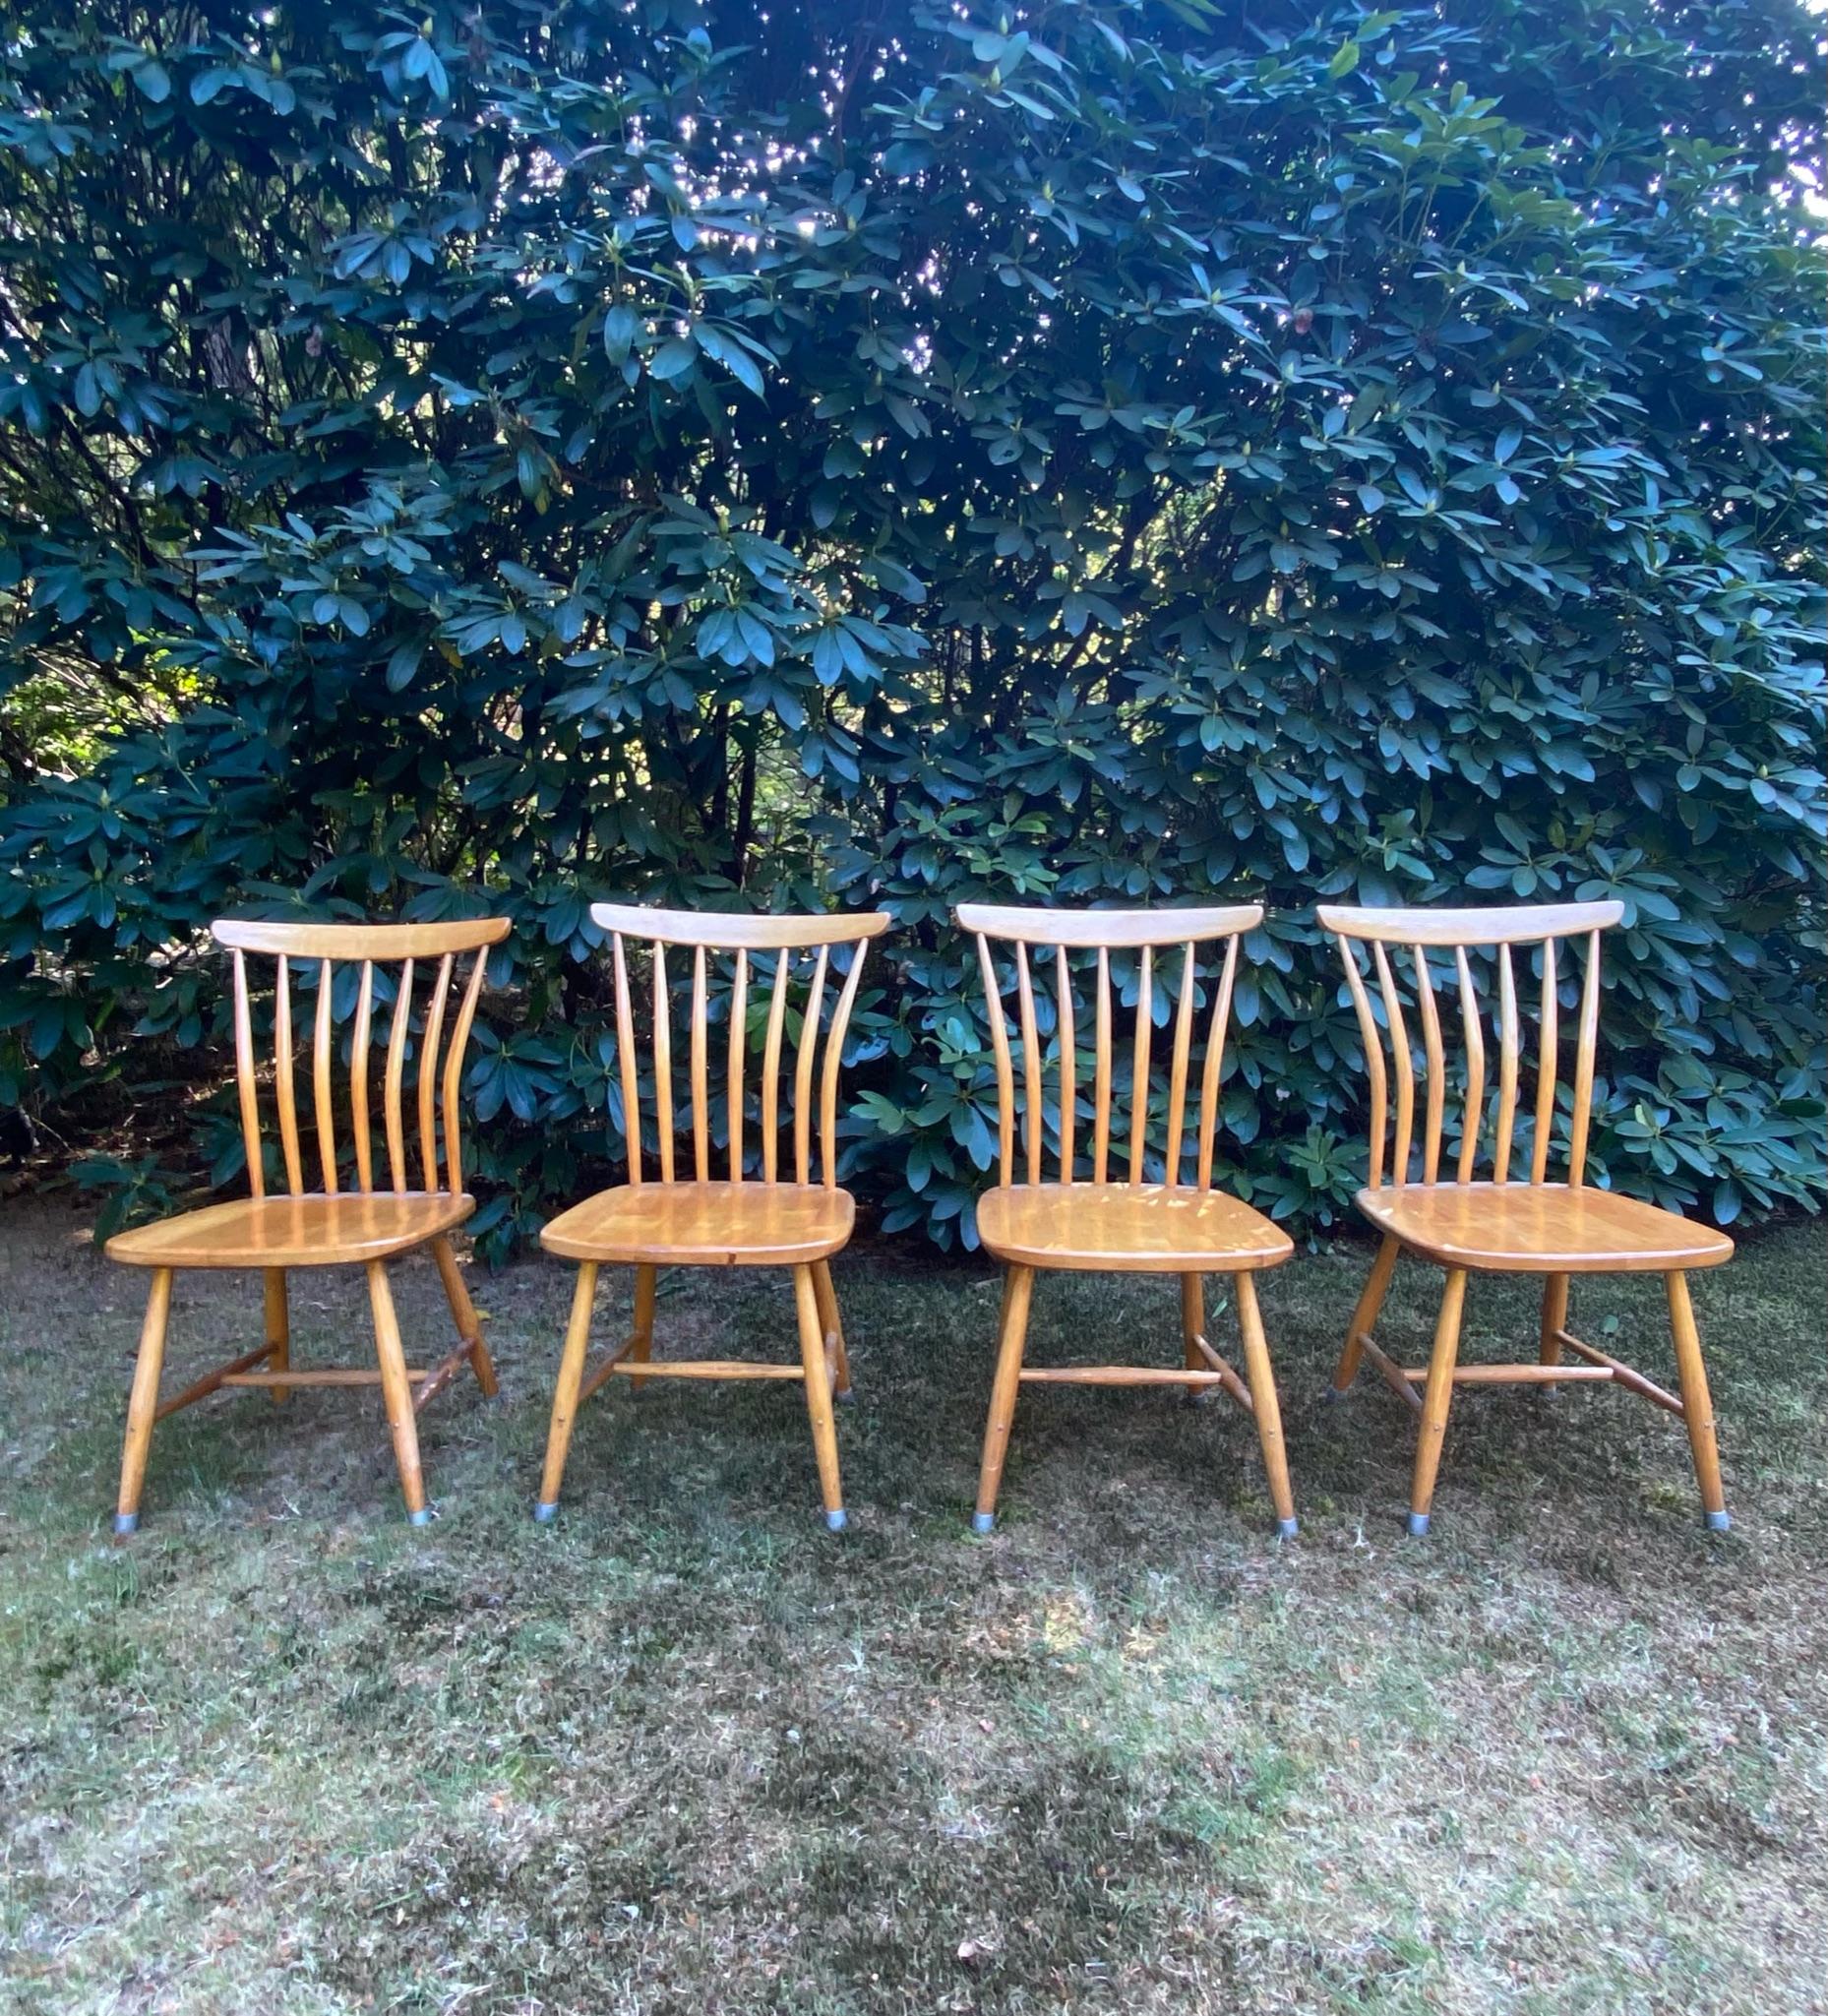 Merveilleux ensemble de quatre chaises à pinces scandinaves Conçu par Bengt Akerblom et Gunnar Eklöf. Les chaises sont dotées d'une base en hêtre et sont en bon état, avec une usure conforme à l'âge et à l'utilisation (voir : Images). Quelques